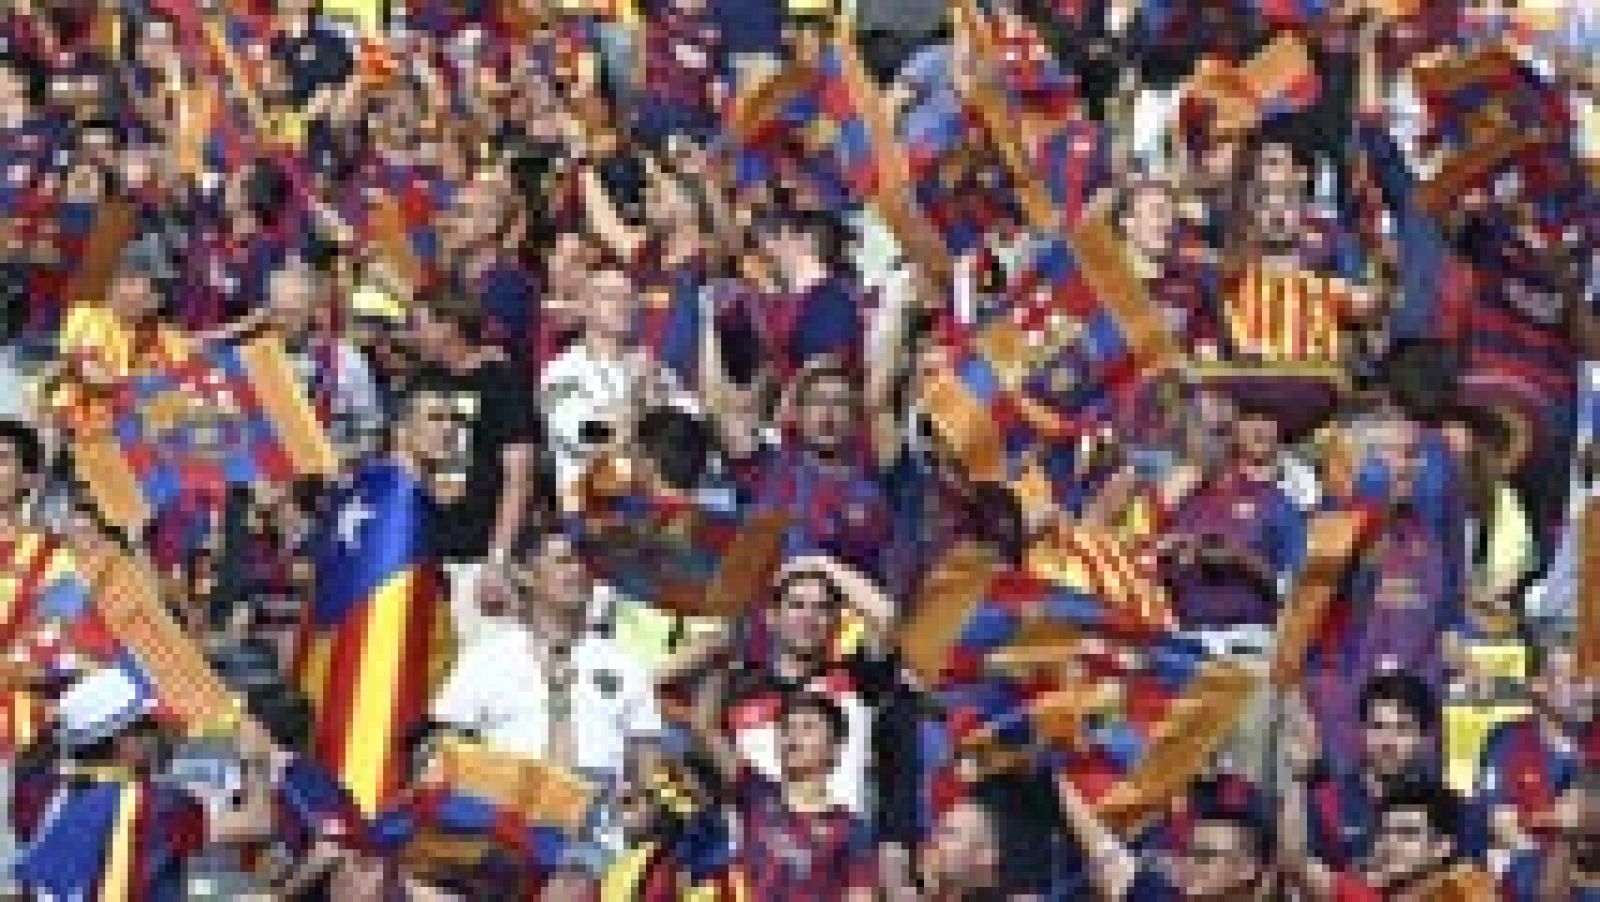 La UEFA ha abierto un expediente al FC Barcelona por masiva presencia de banderas independentistas, y de cánticos de ese signo, durante la final de la Liga de Campeones, que se disputó el pasado 6 de junio en Berlín, según ha confirmado a Efe el club